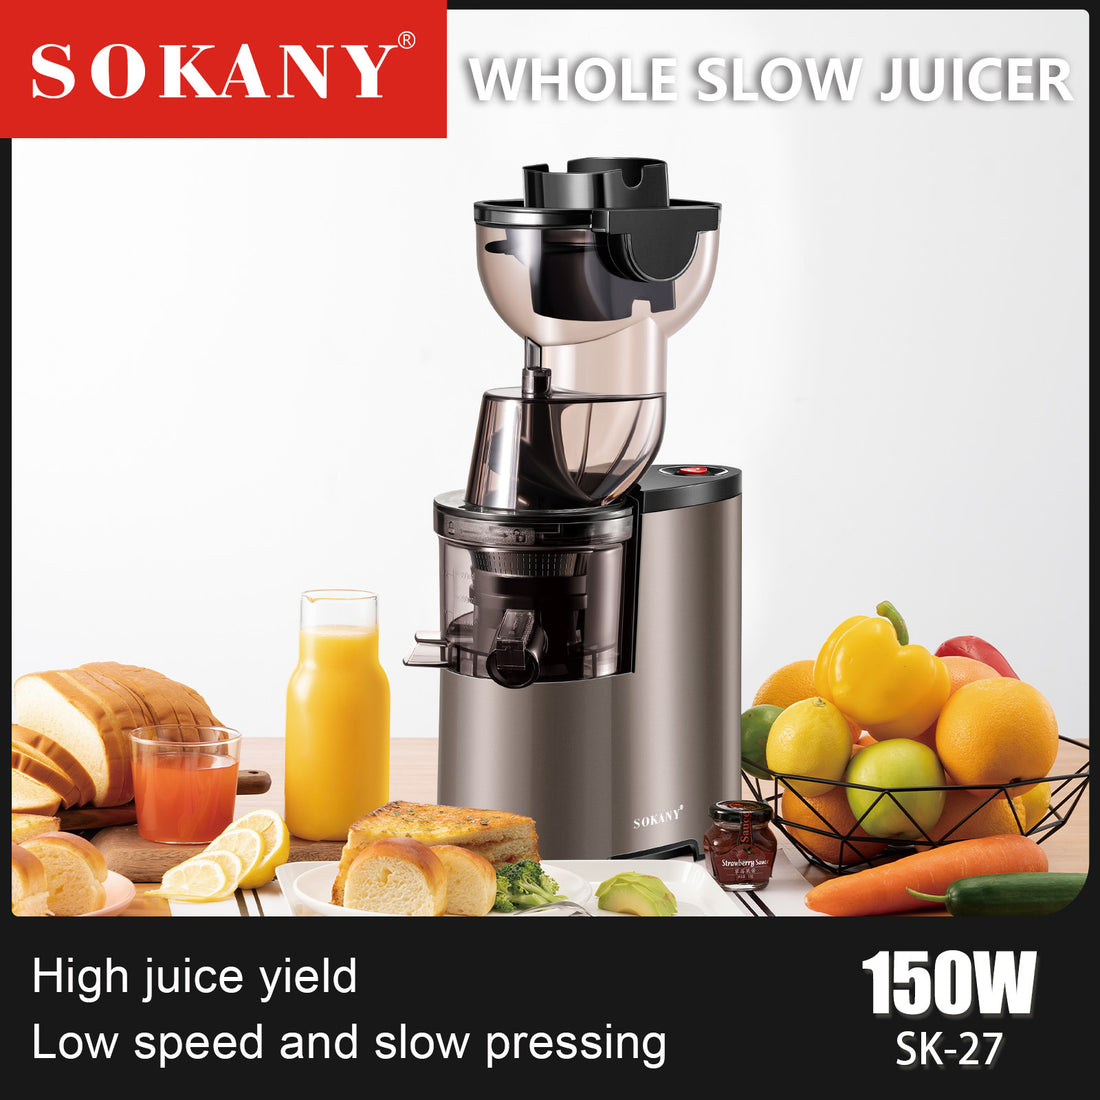 Sokany Whole Slow Juicer SK-27